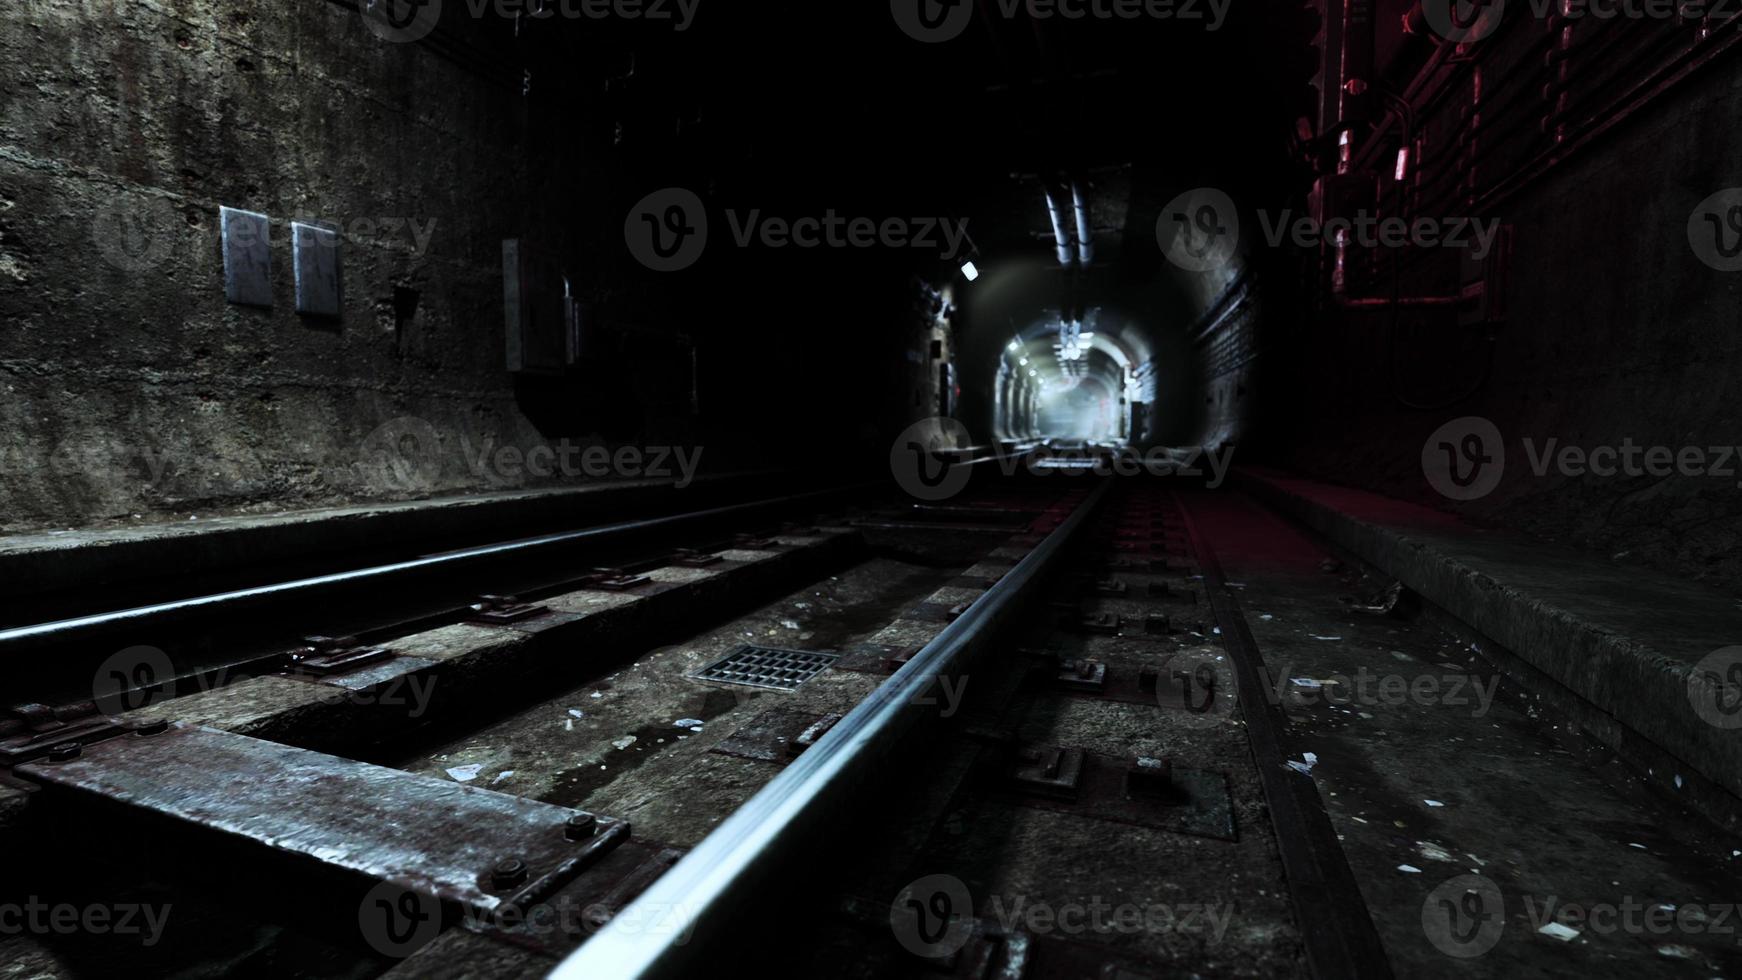 Tiefer U-Bahn-Tunnel im Bau foto